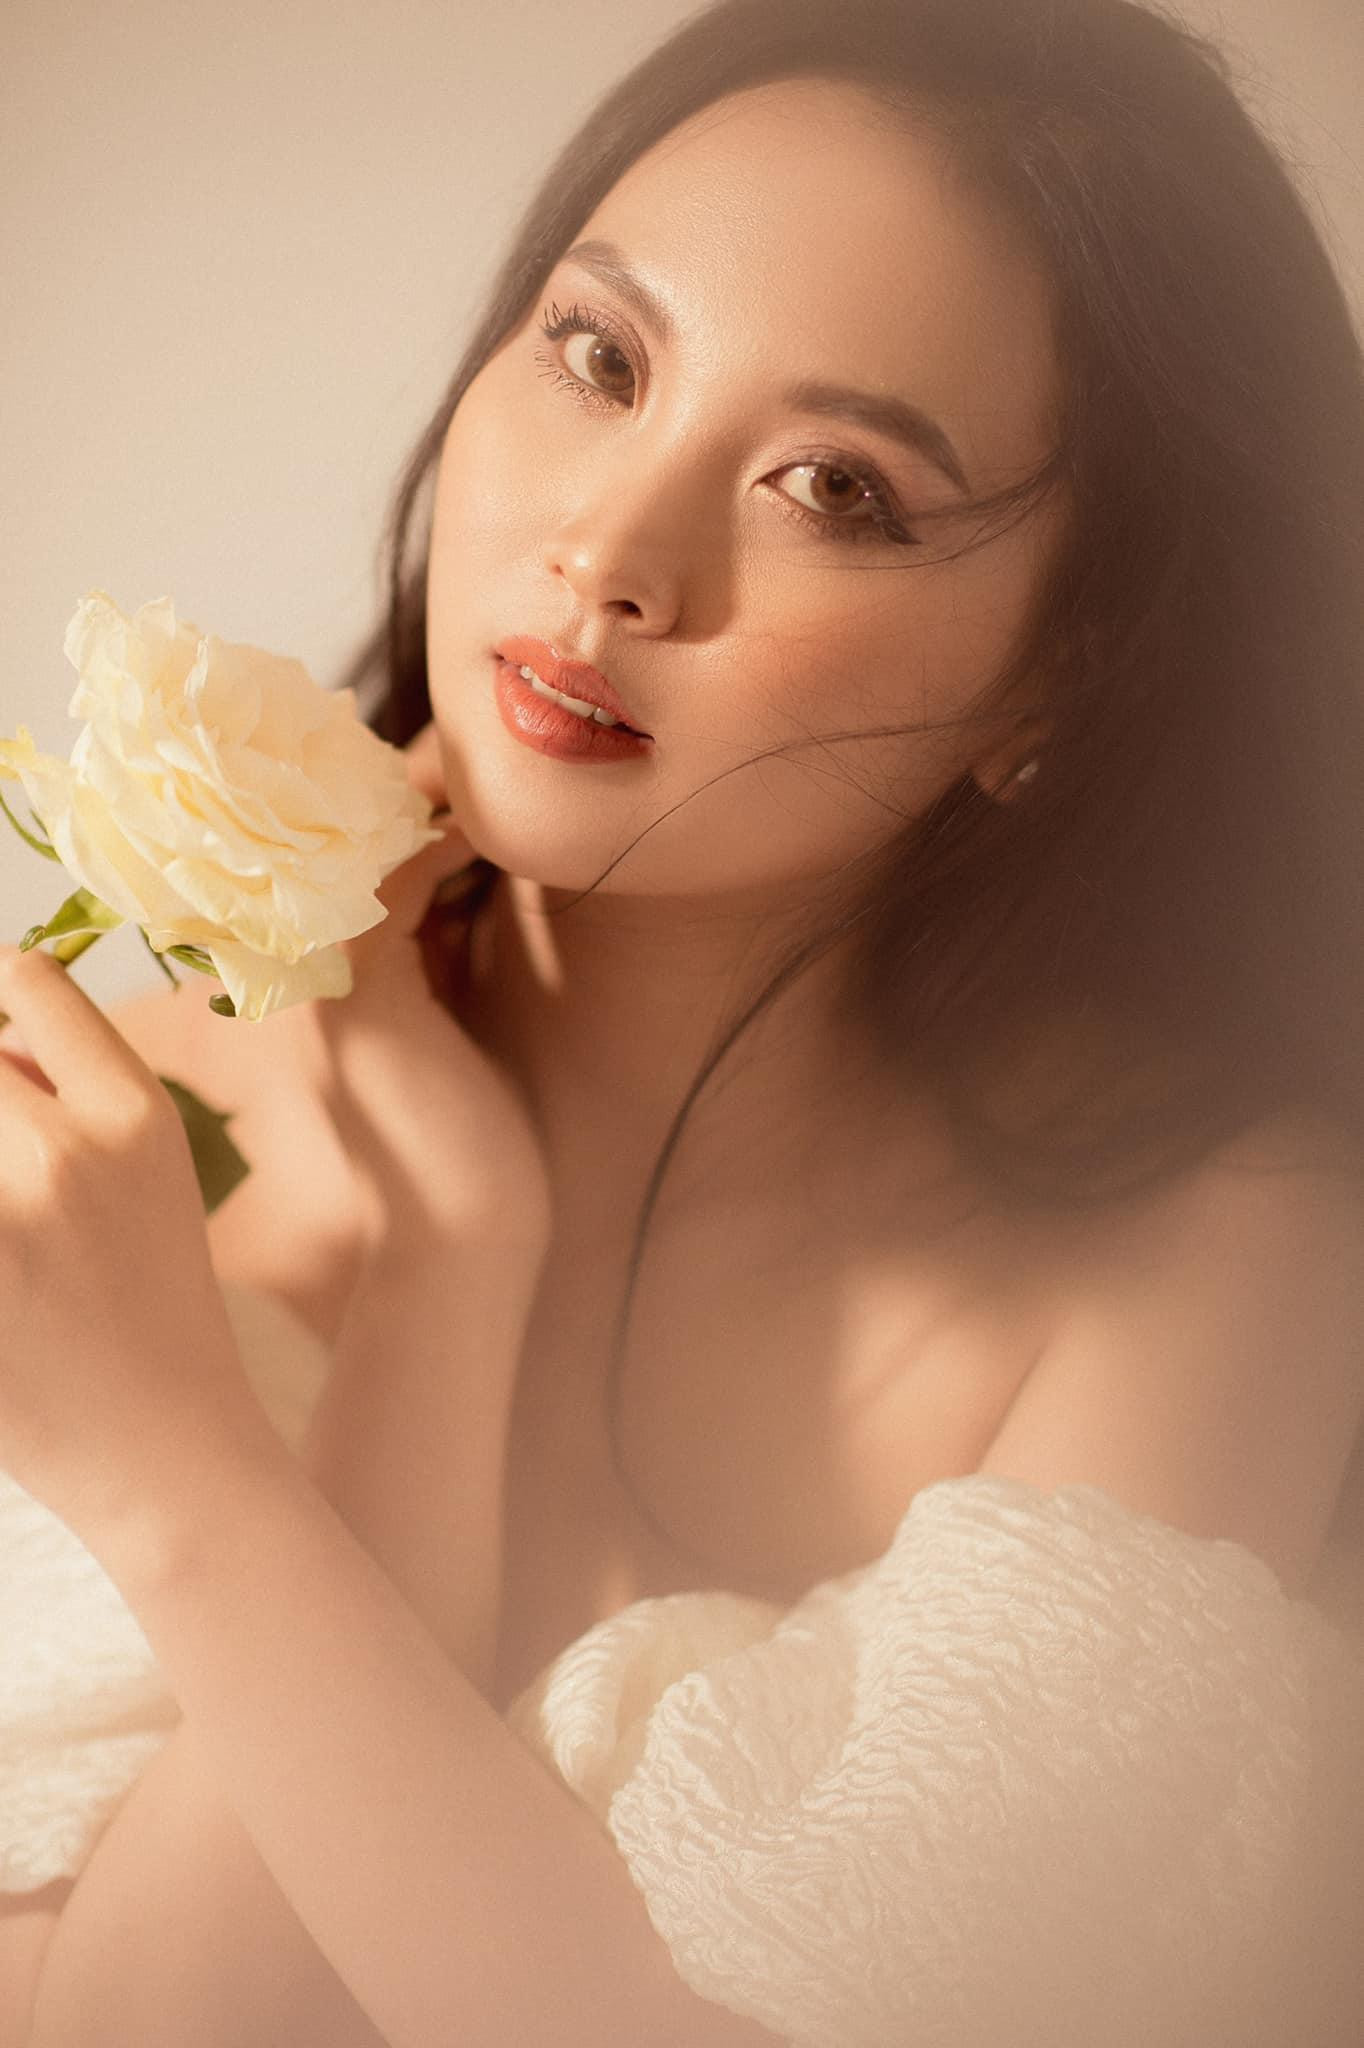 Nhan sắc ngọt ngào của người đẹp Nghệ An hai lần dự thi Hoa hậu Việt Nam ảnh 10